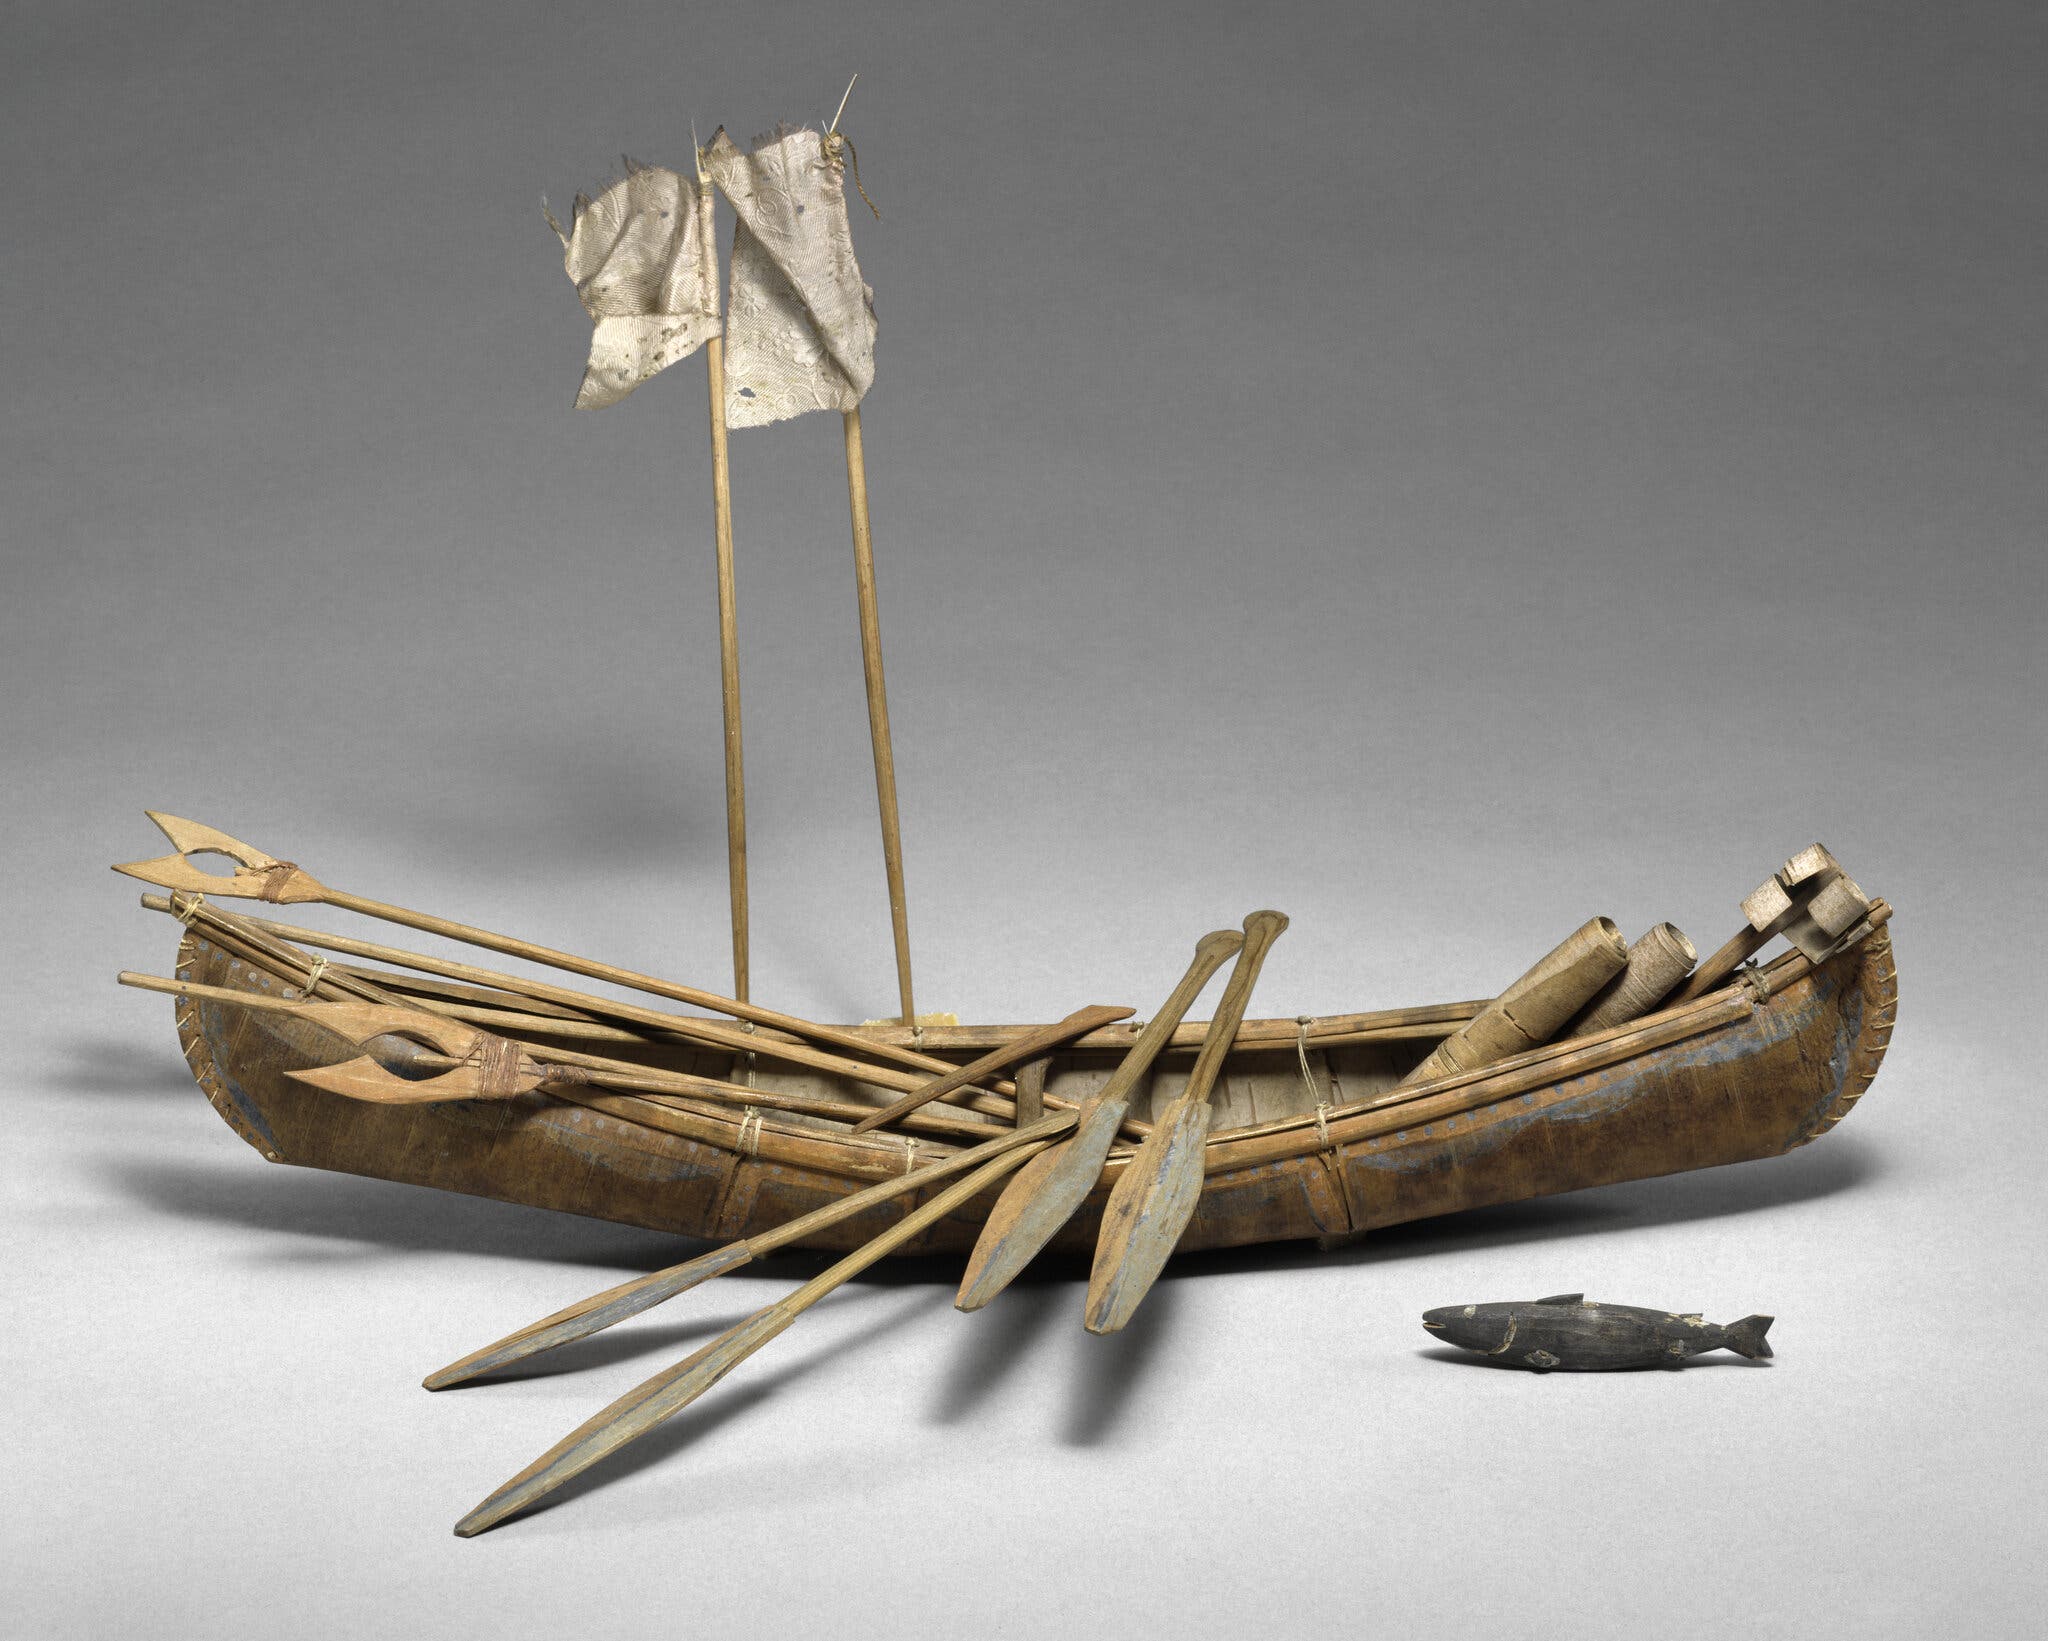 展览中展出的独木舟